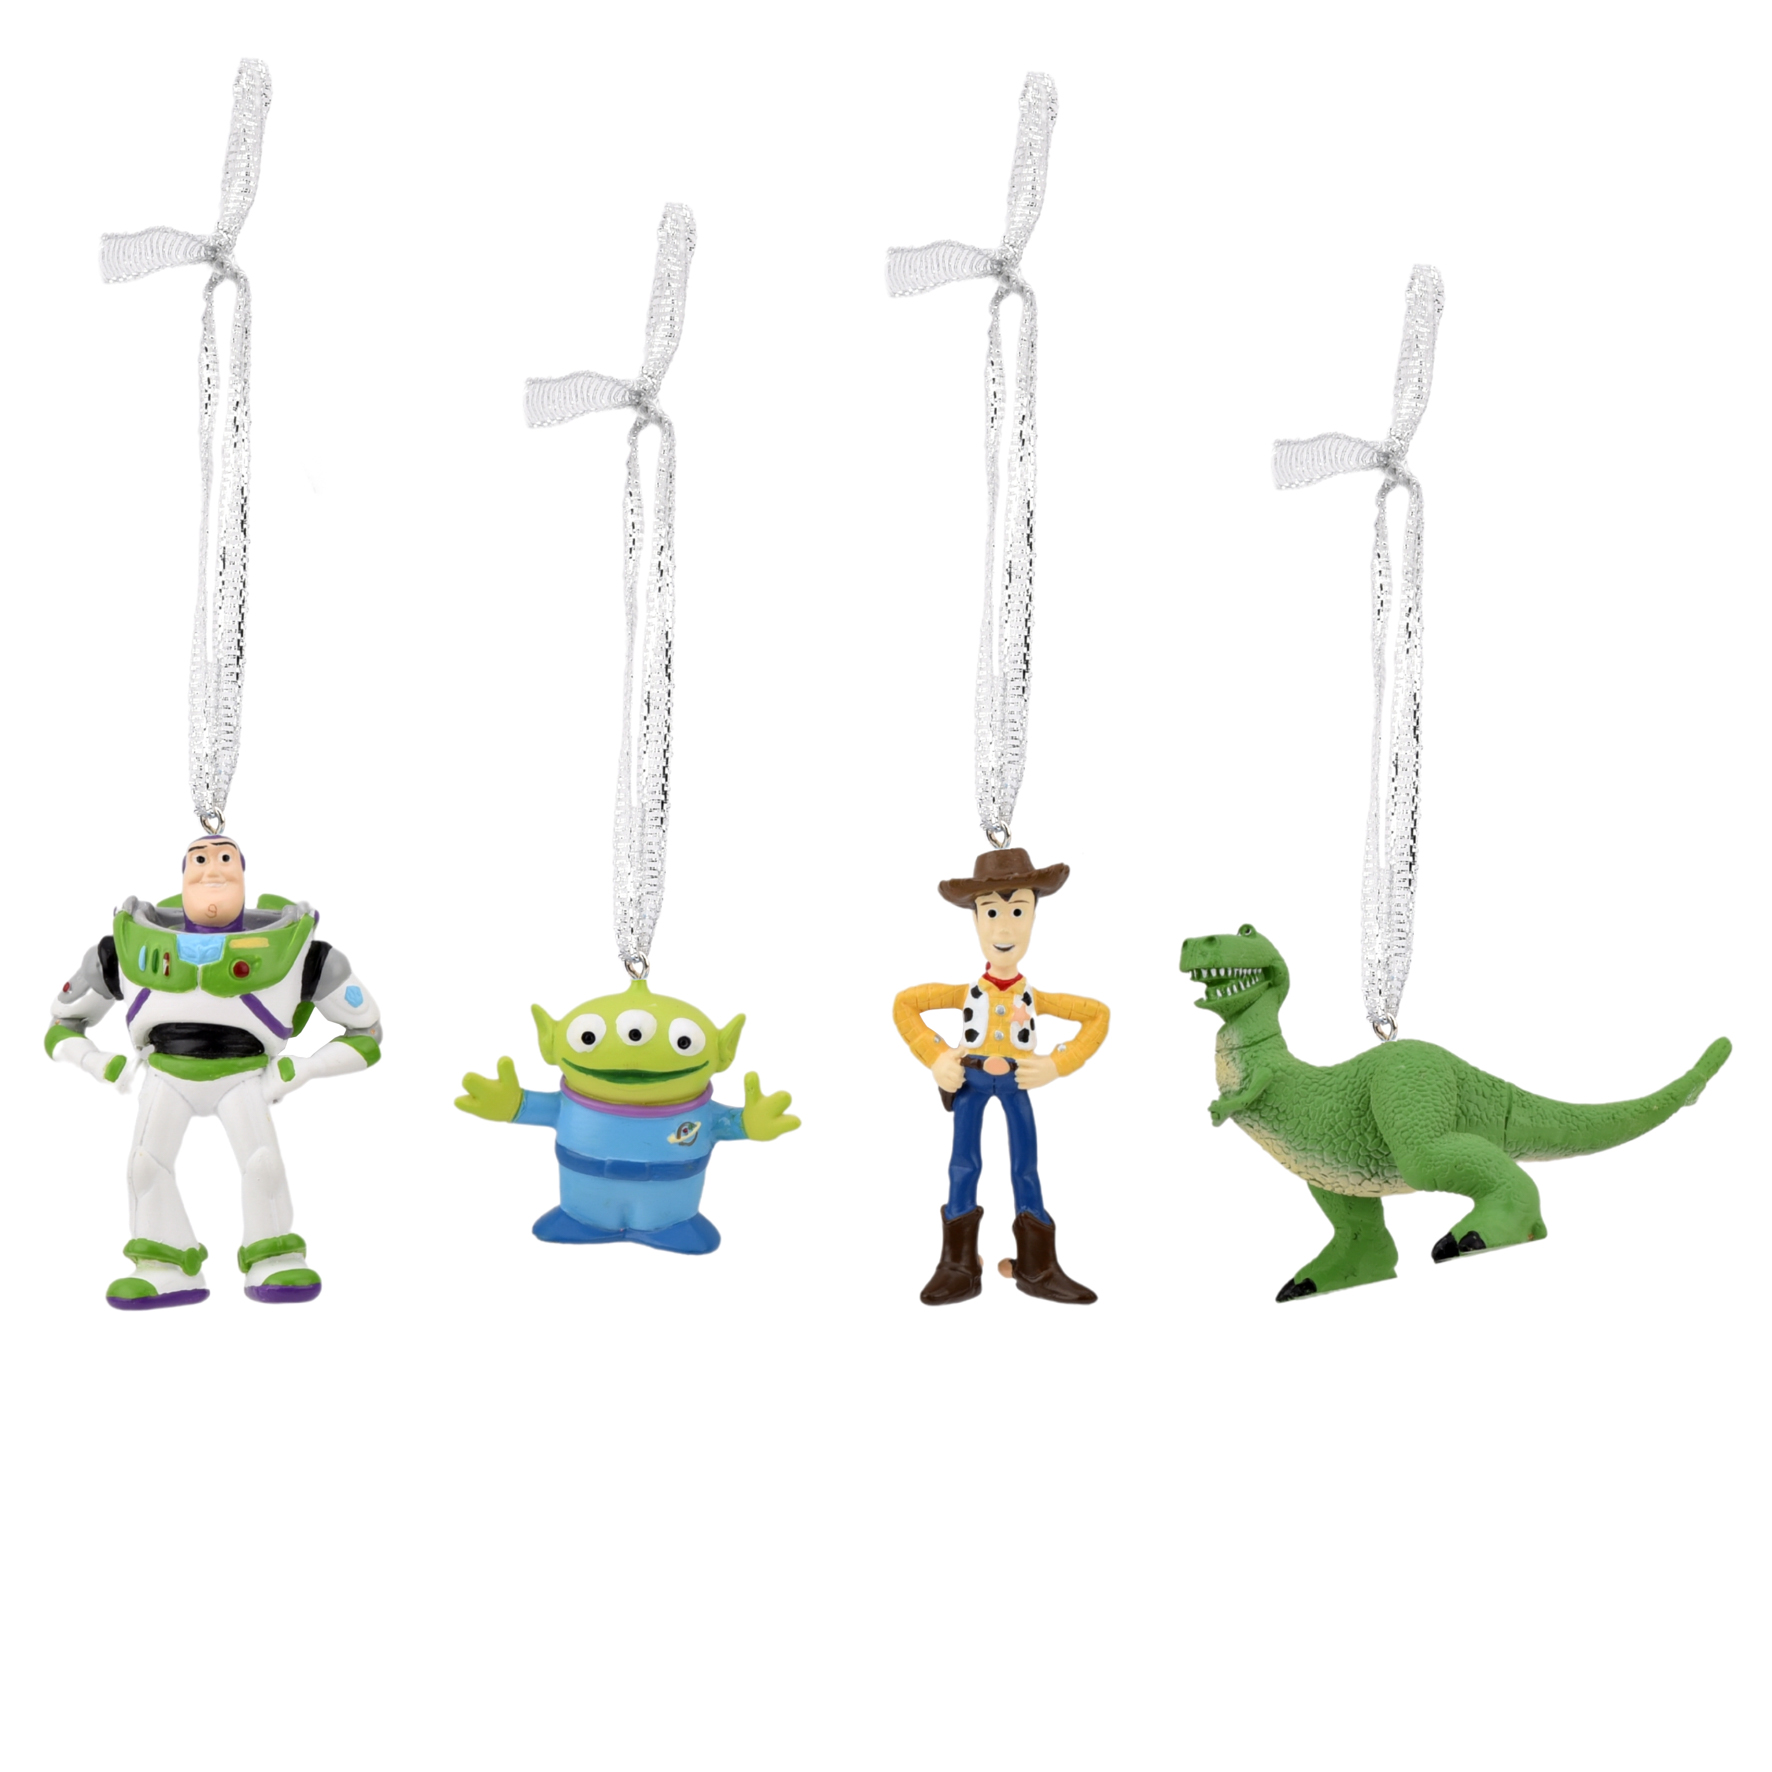 Disney - Set 4 Ozdob - Toy Story (Buzz Lightyear, Alien, Woodie, and Rex)